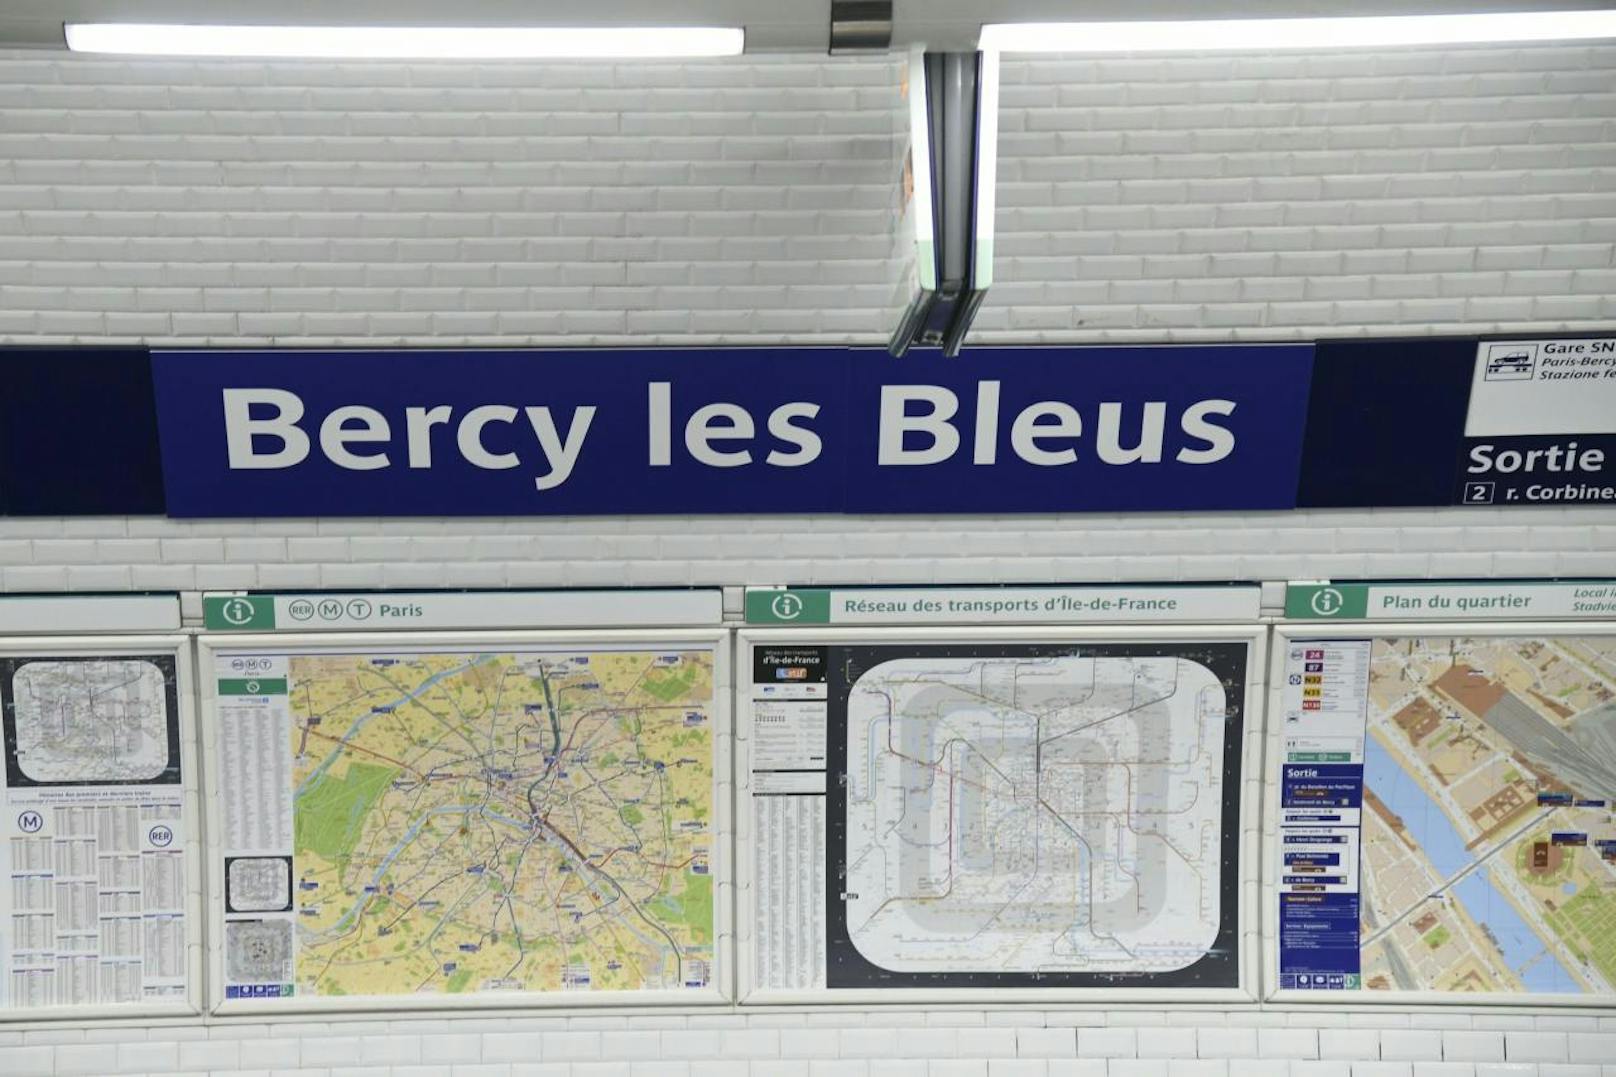 Statt einem Mercy wurde an die Station "Bercy" ein "les Bleus" angehängt.